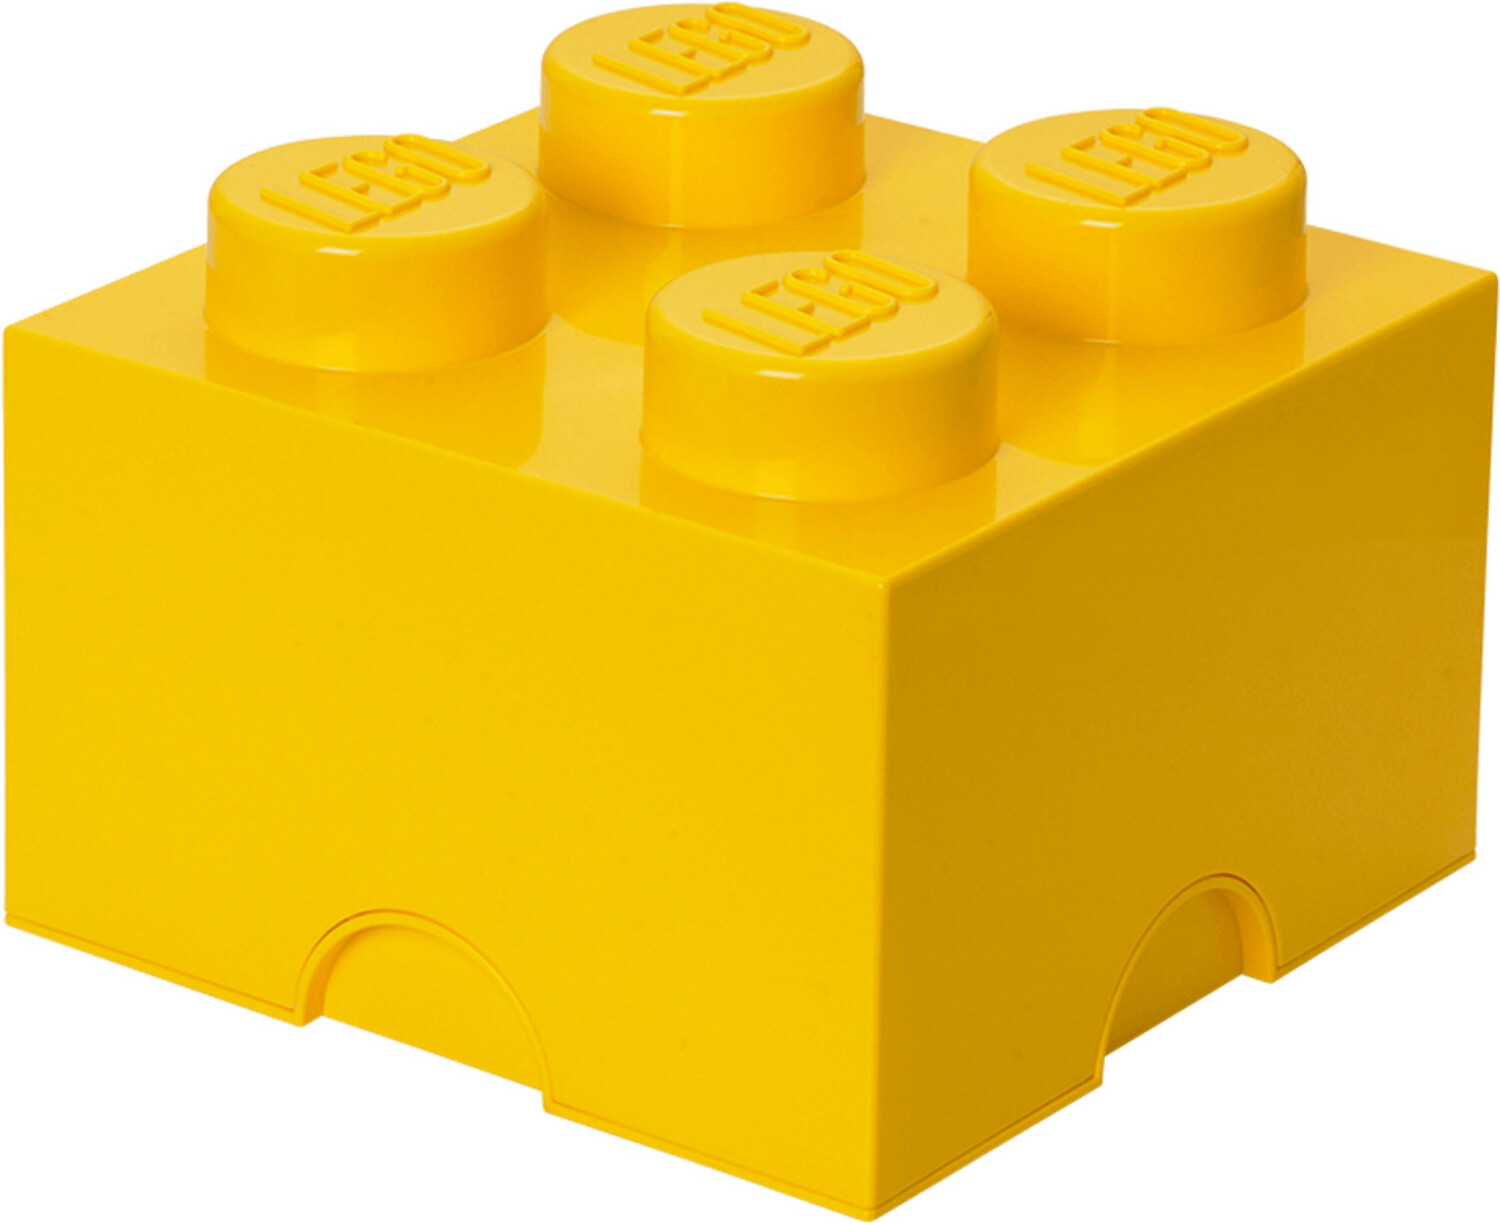 Lego Mattoncino Contenitore LEGO - Rosa - 4 Bottoncini unisex (bambini)